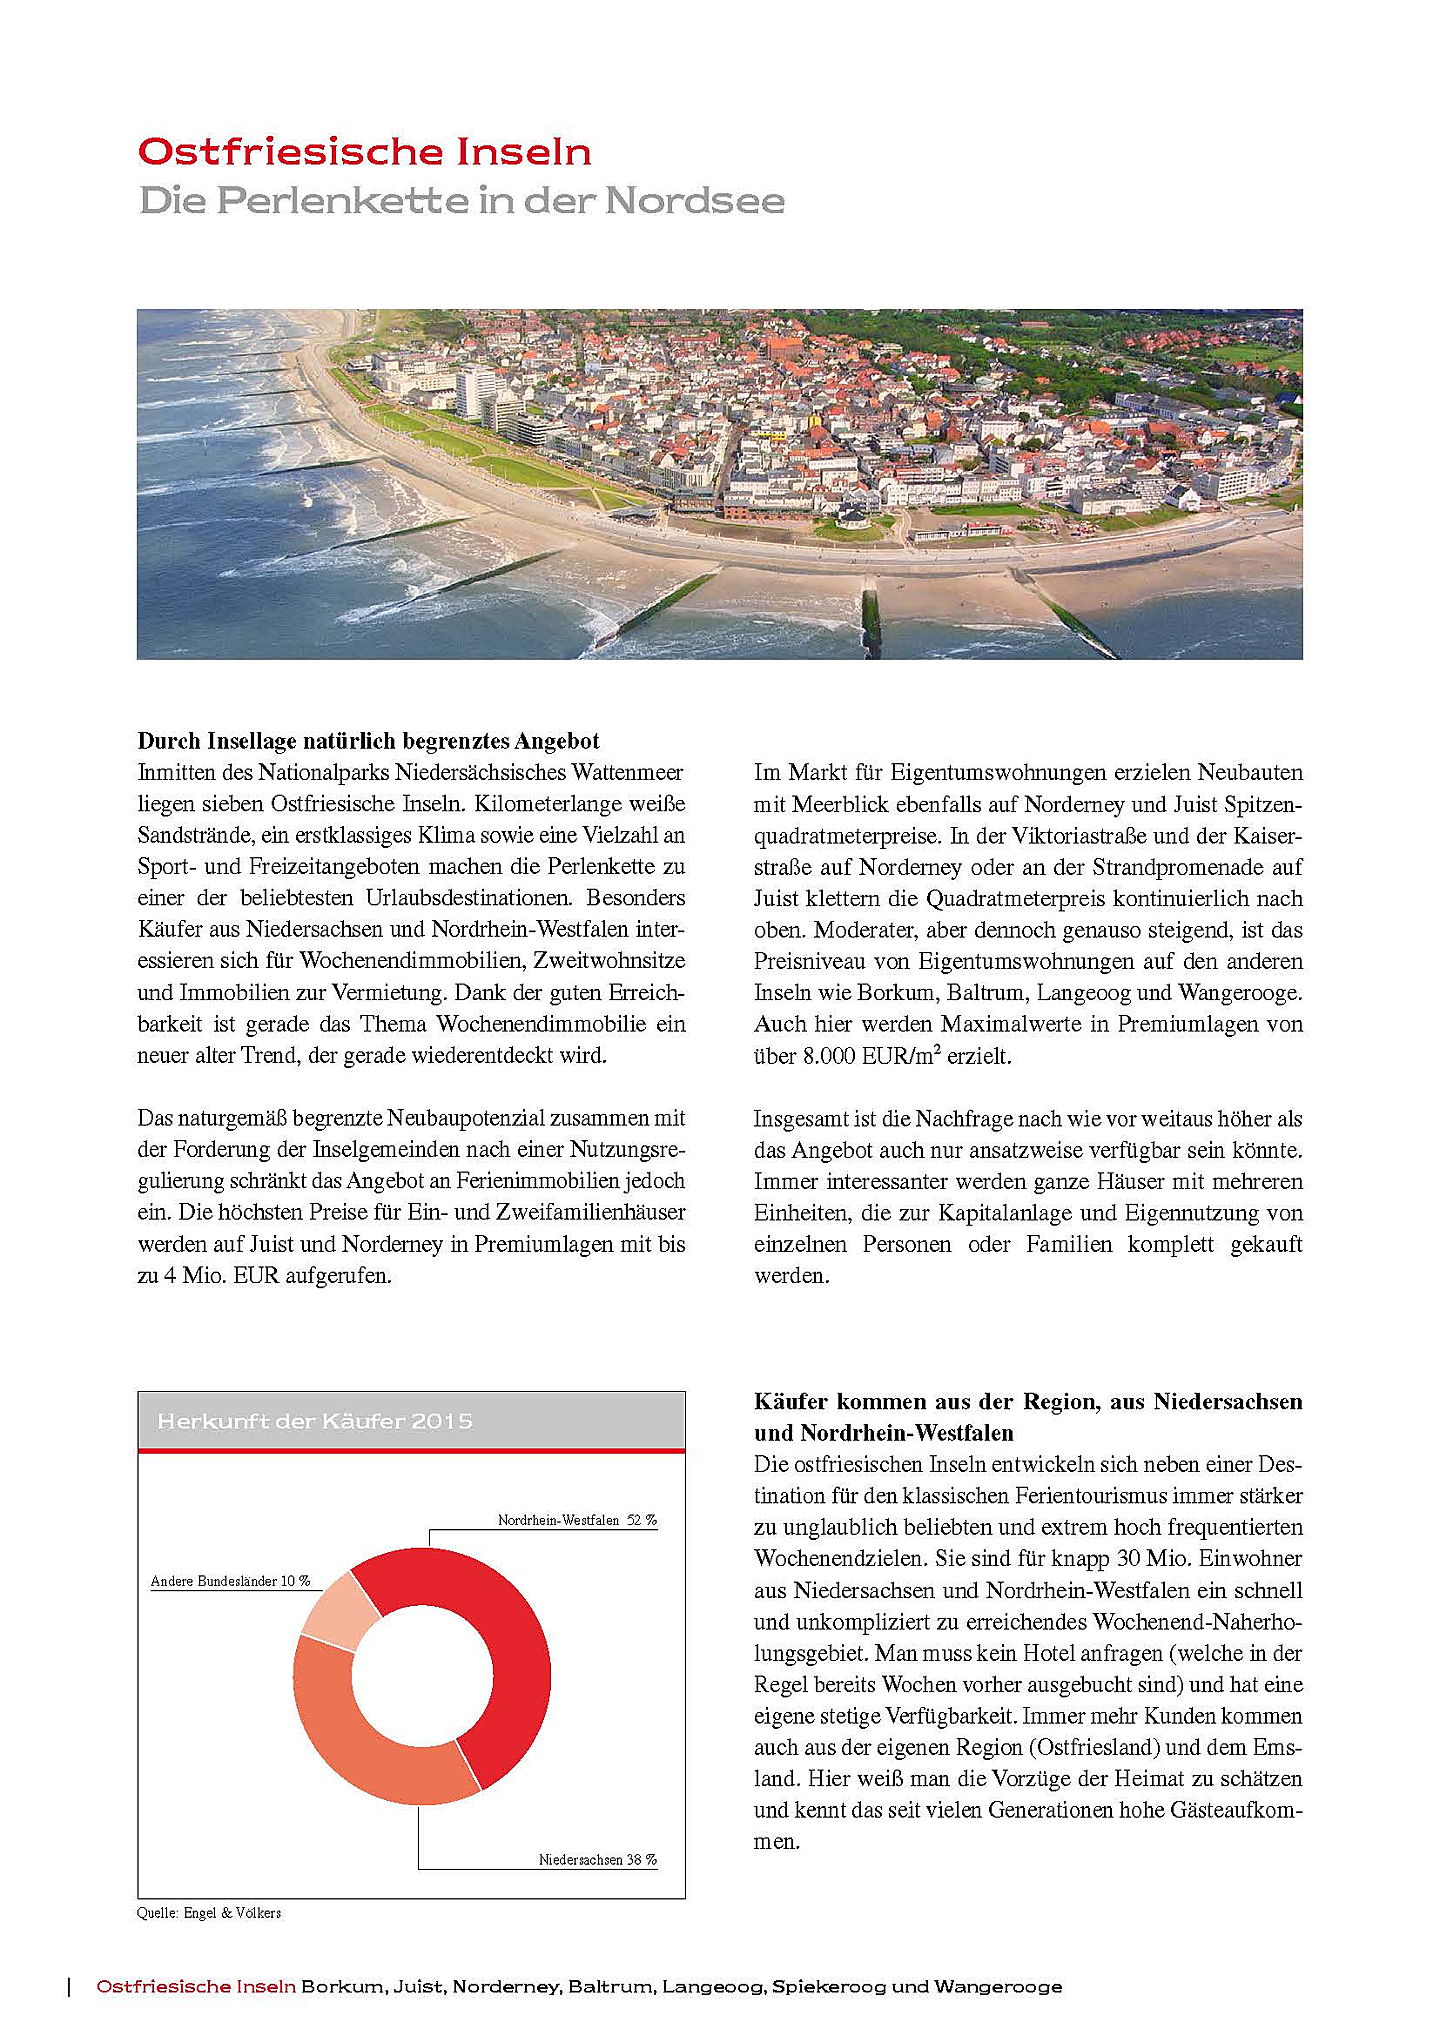  Emden
- Ferienimmobilien Ostfriesische Inseln 2016_Seite_2.jpg